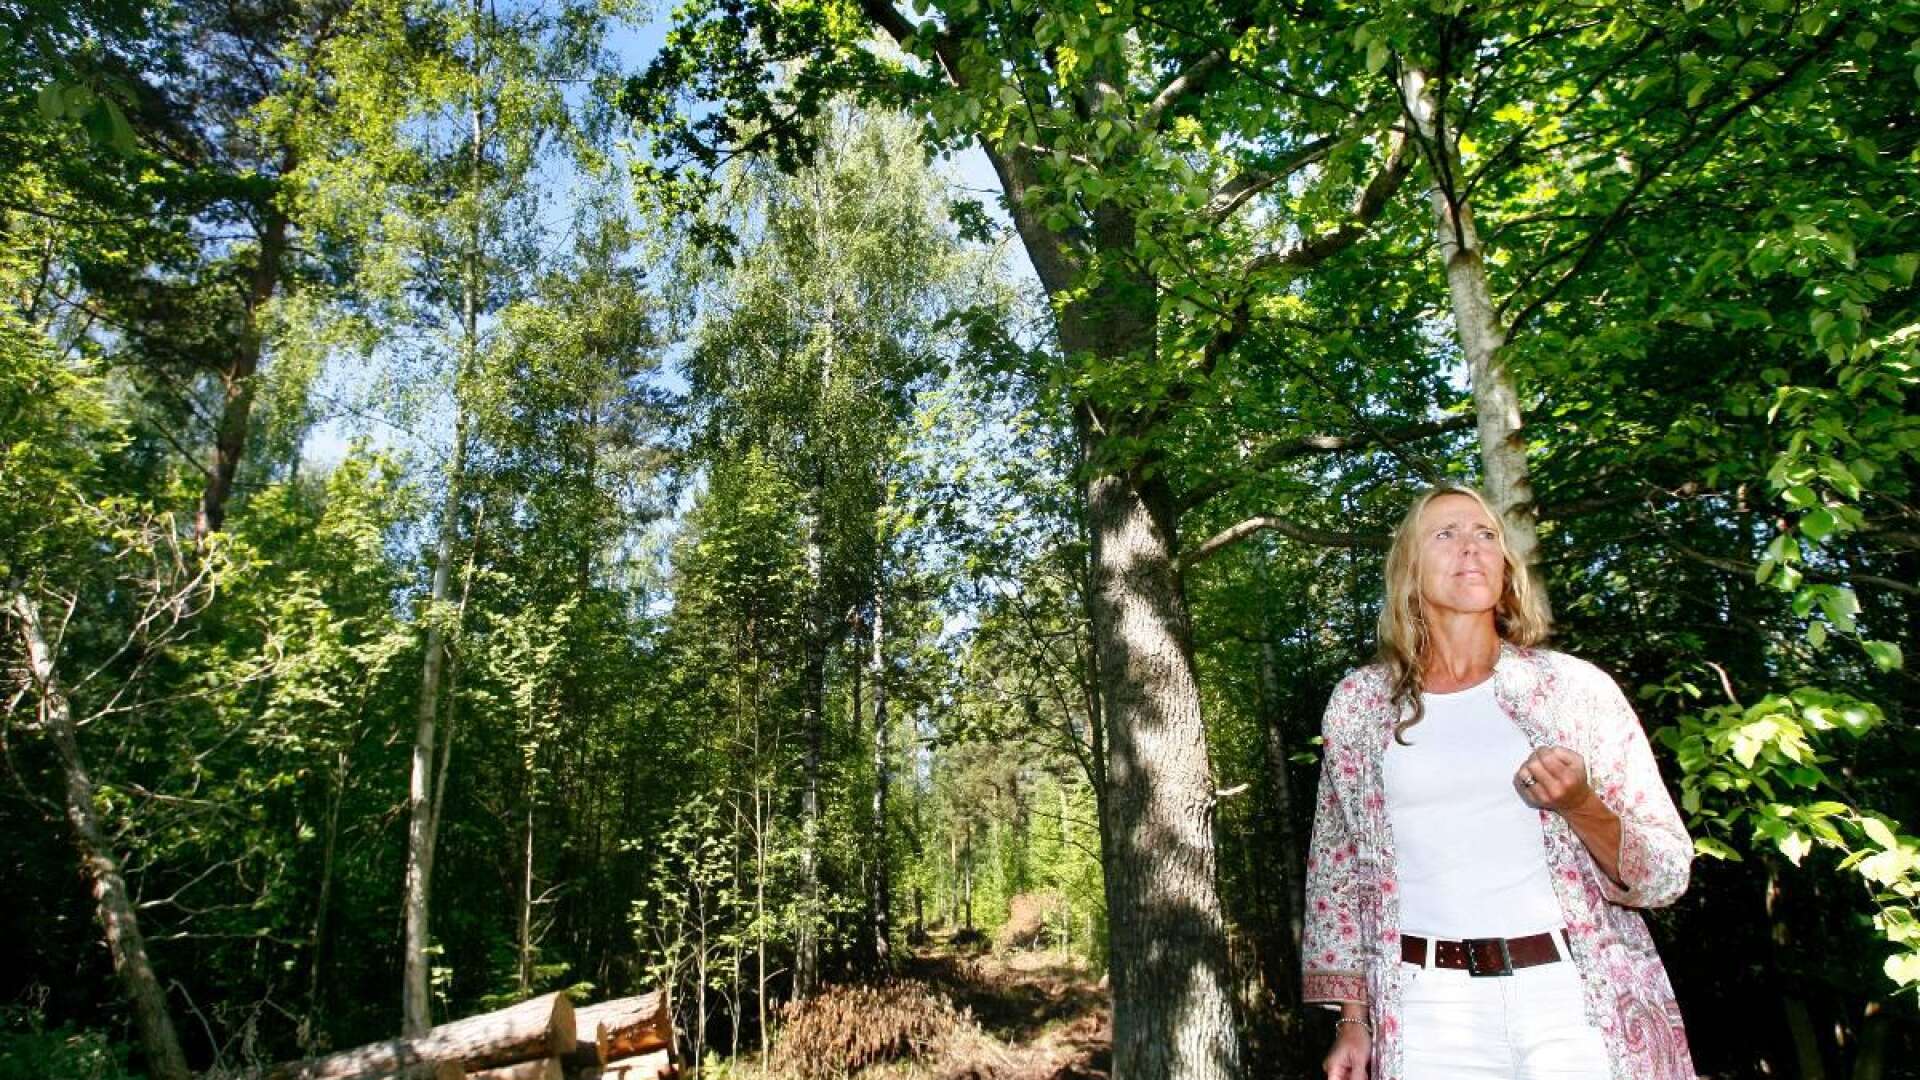 Tina Karling Hellsvik, stadsplanechef i Mariestad, tycker att västra Ekudden erbjuder ett mycket attraktivt läge. Här planerar kommunen ett nytt bostadsområde.